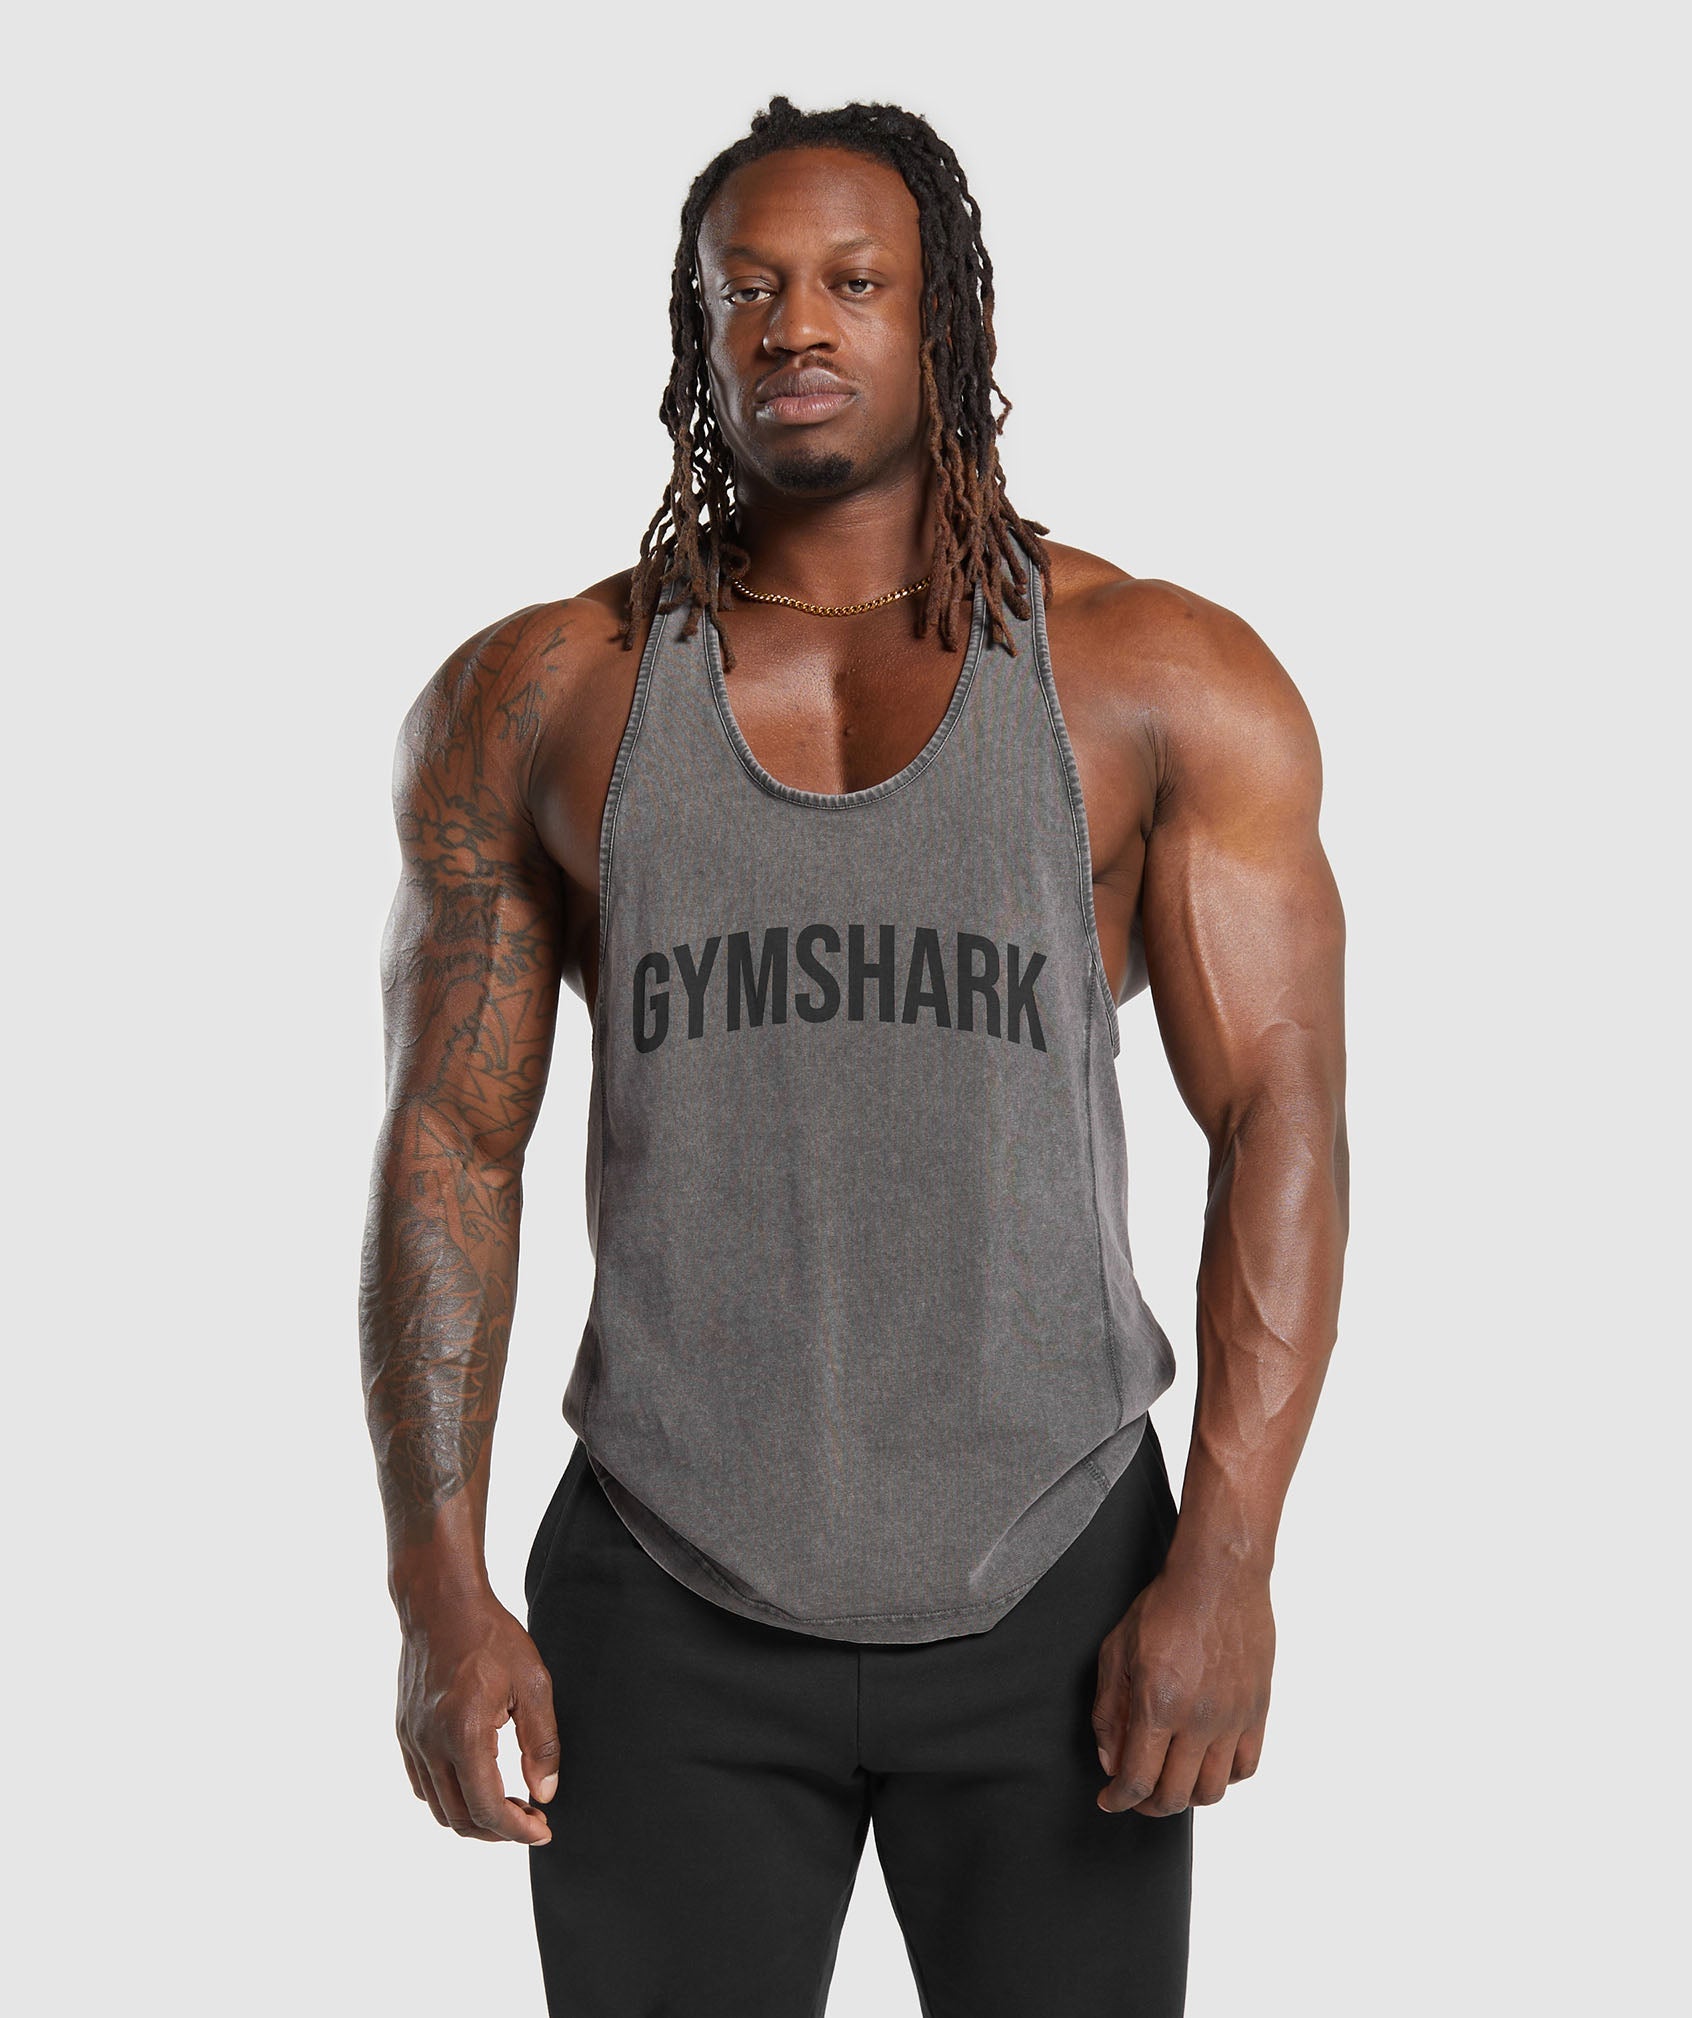 Gymshark, la marque tendance pour le fitness - Site de licence-pro